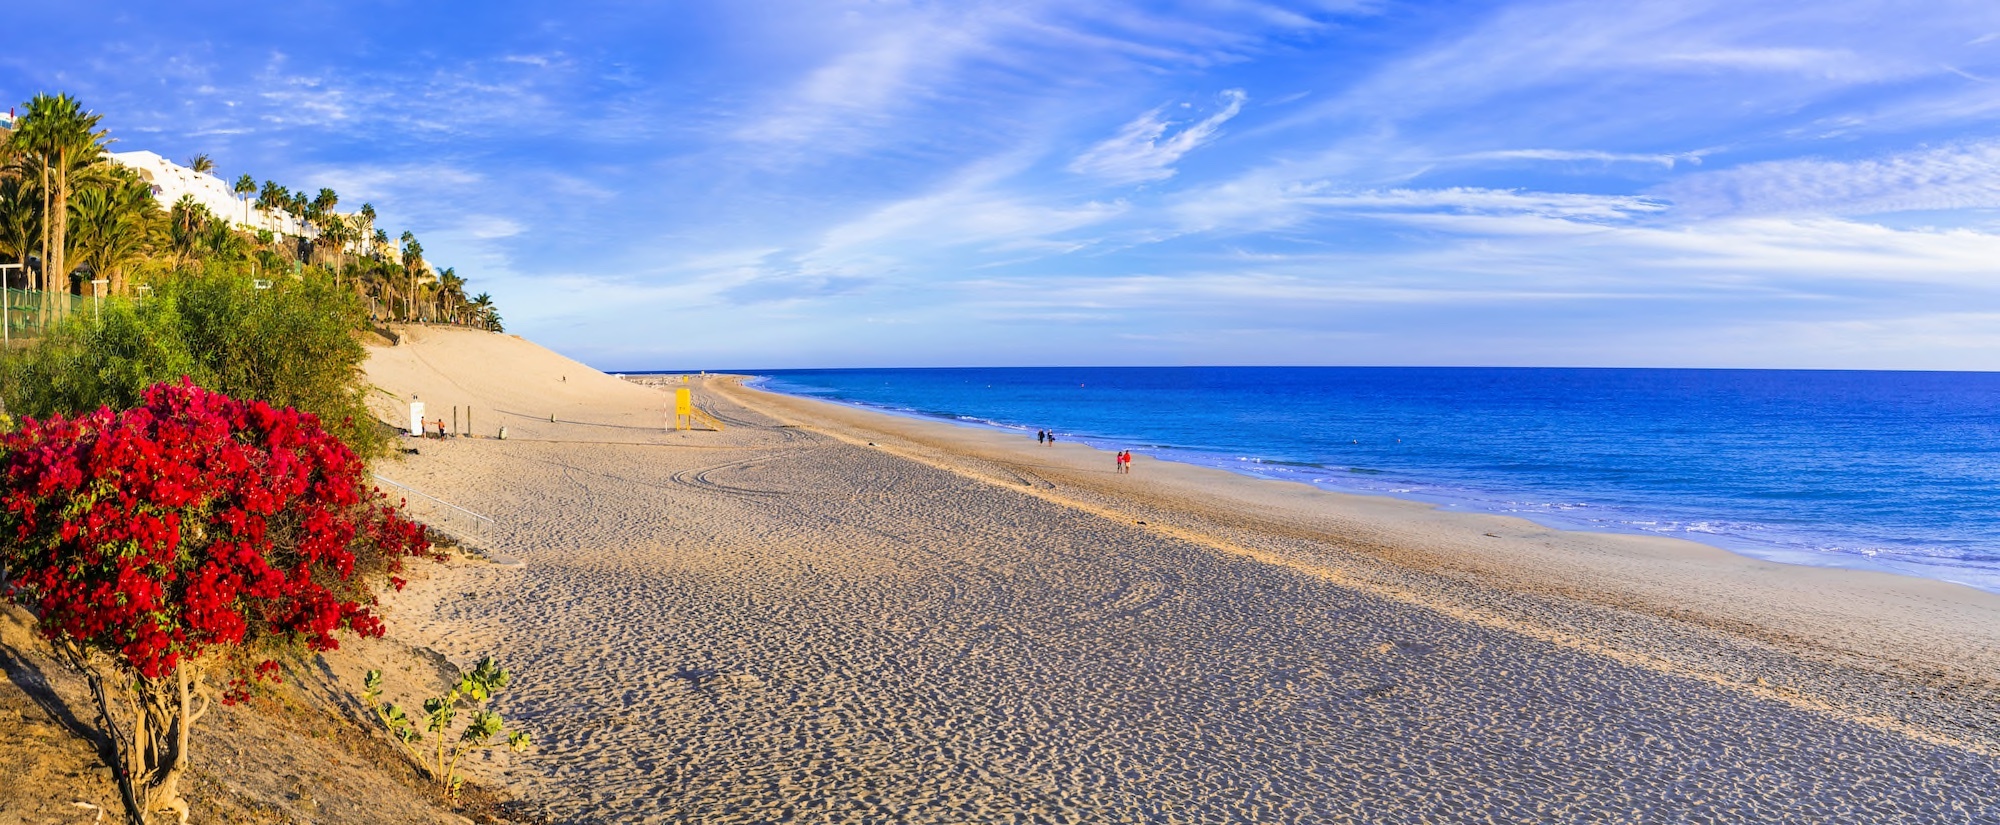 Fuerteventura Copyright © AdobeStock 250264892 Freesurf